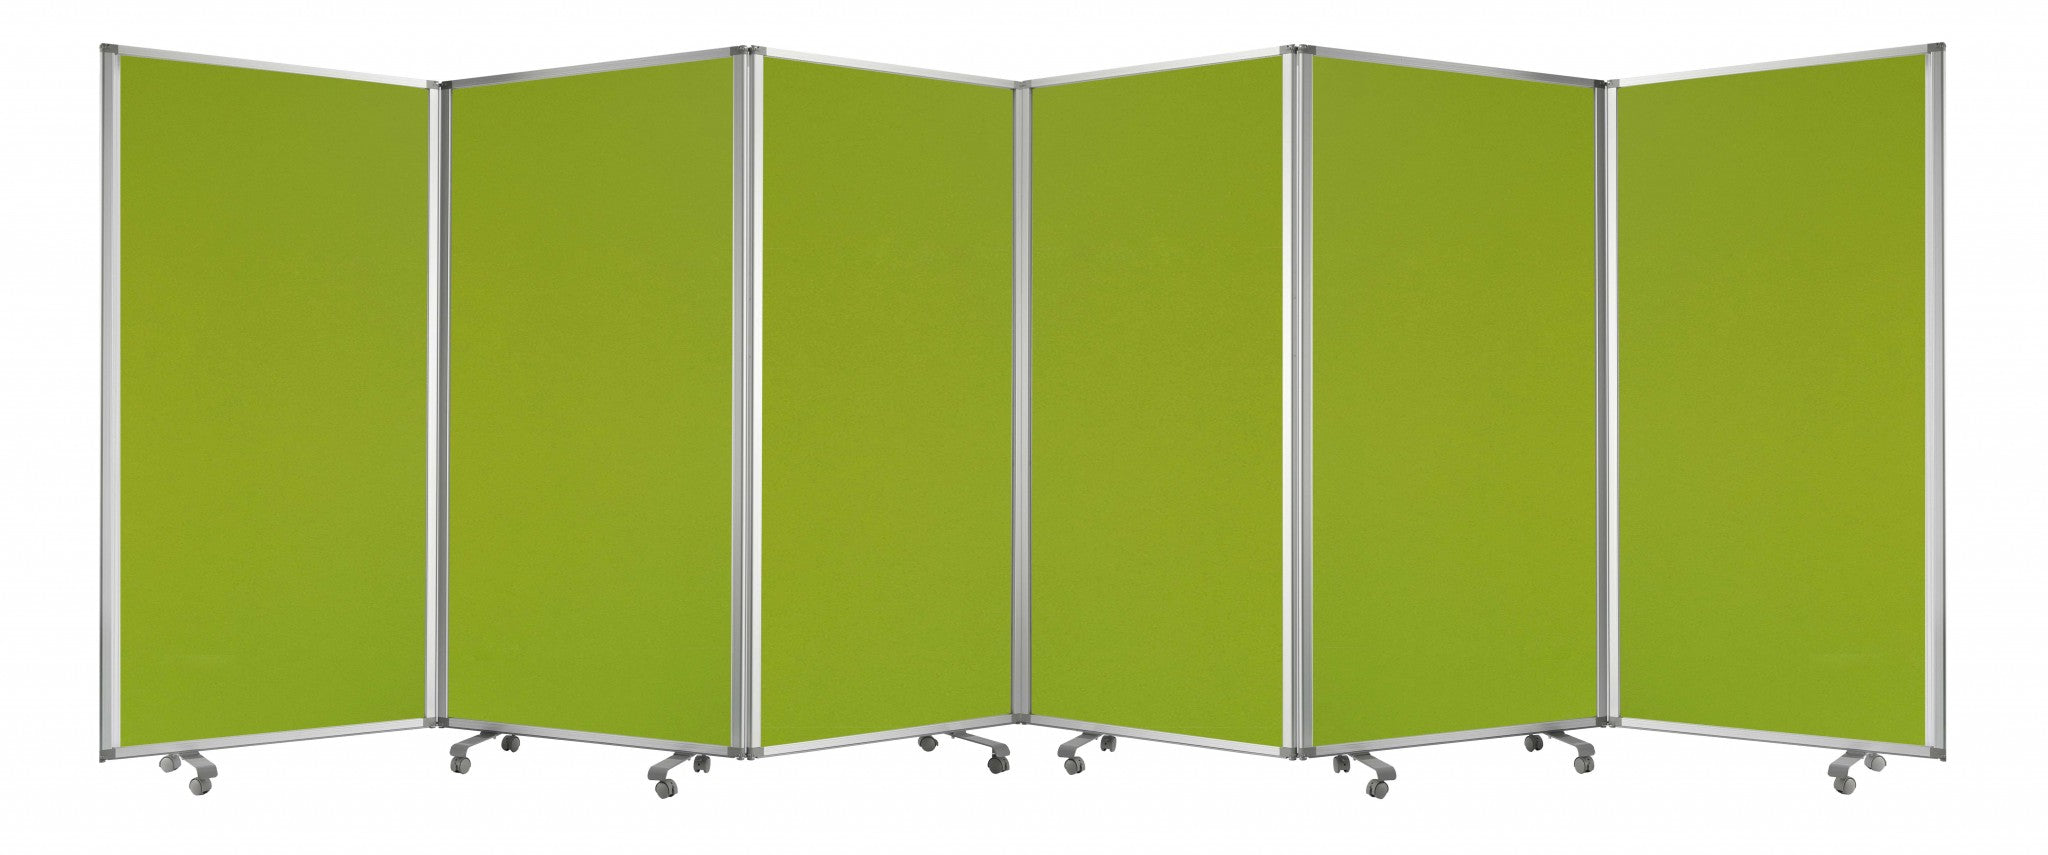 212 X 1 X 71 Green Metal 6 Panel Screen